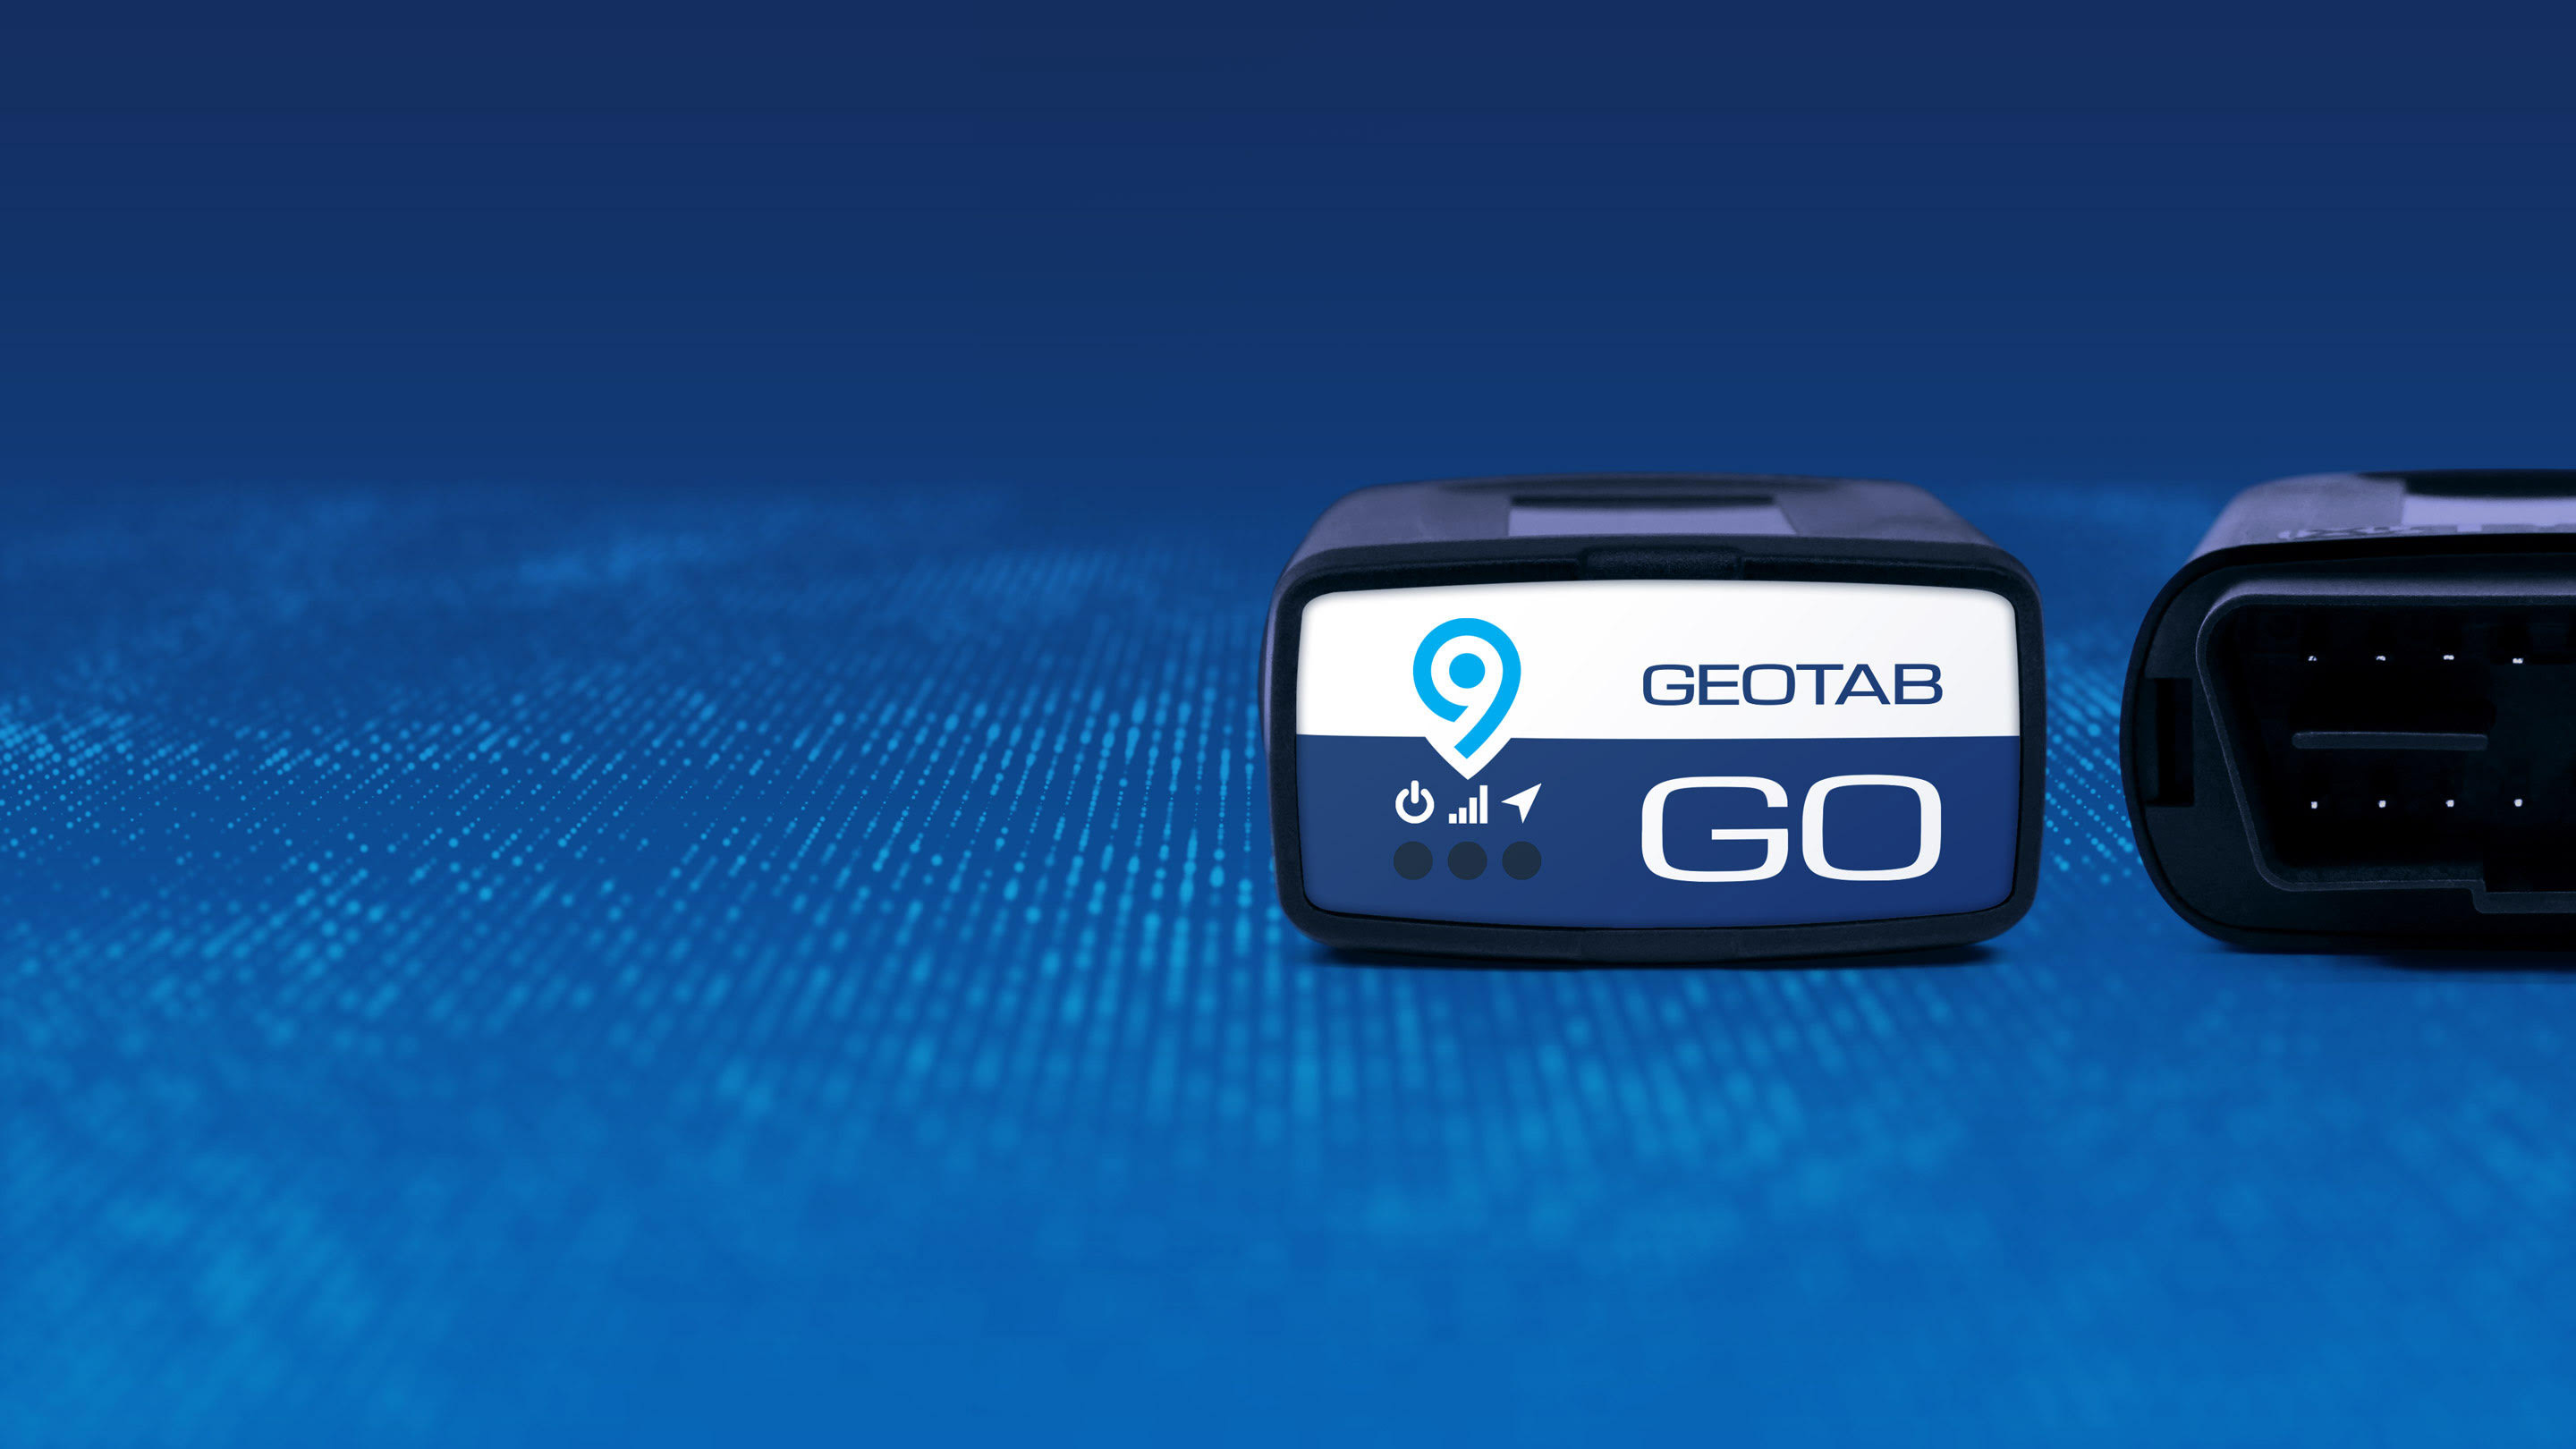 Foto do dispositivo Geotab GO9 em um fundo azul